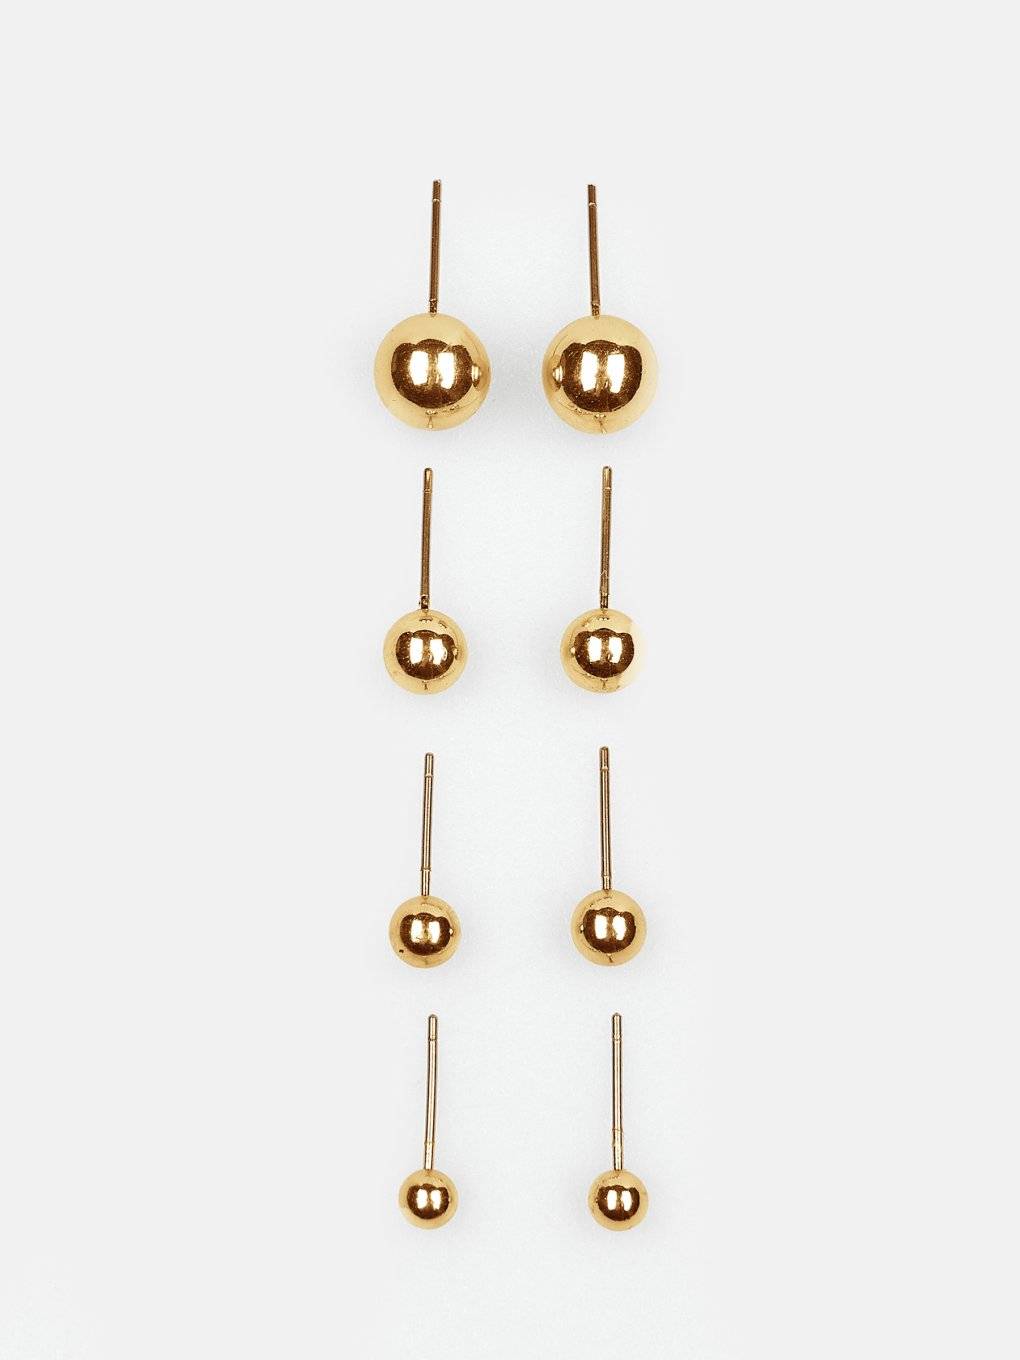 Set of basic metallic earrings